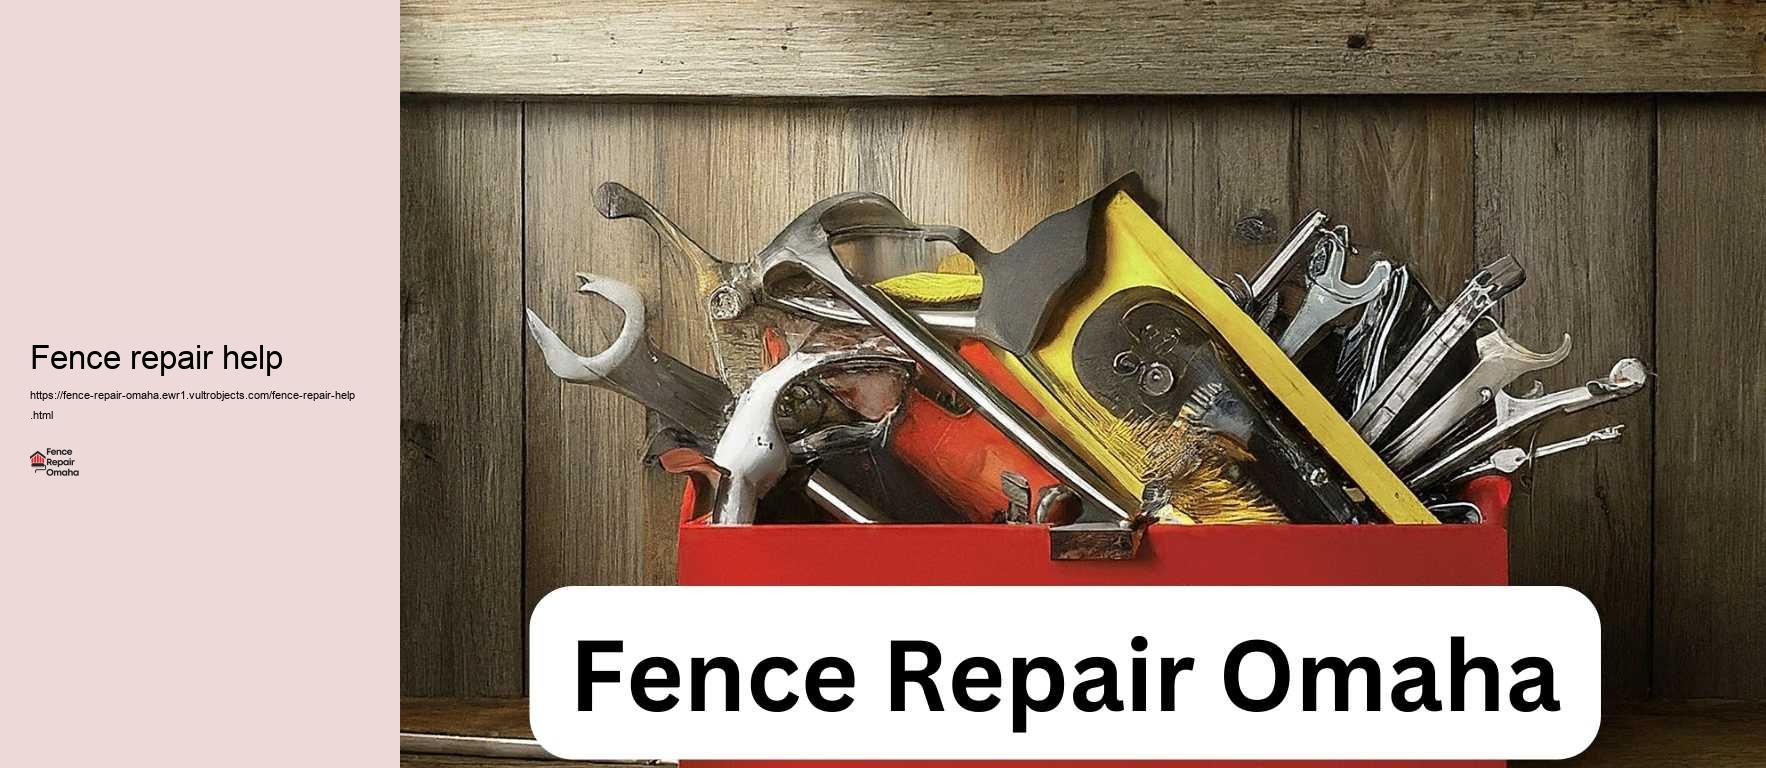 Fence repair help